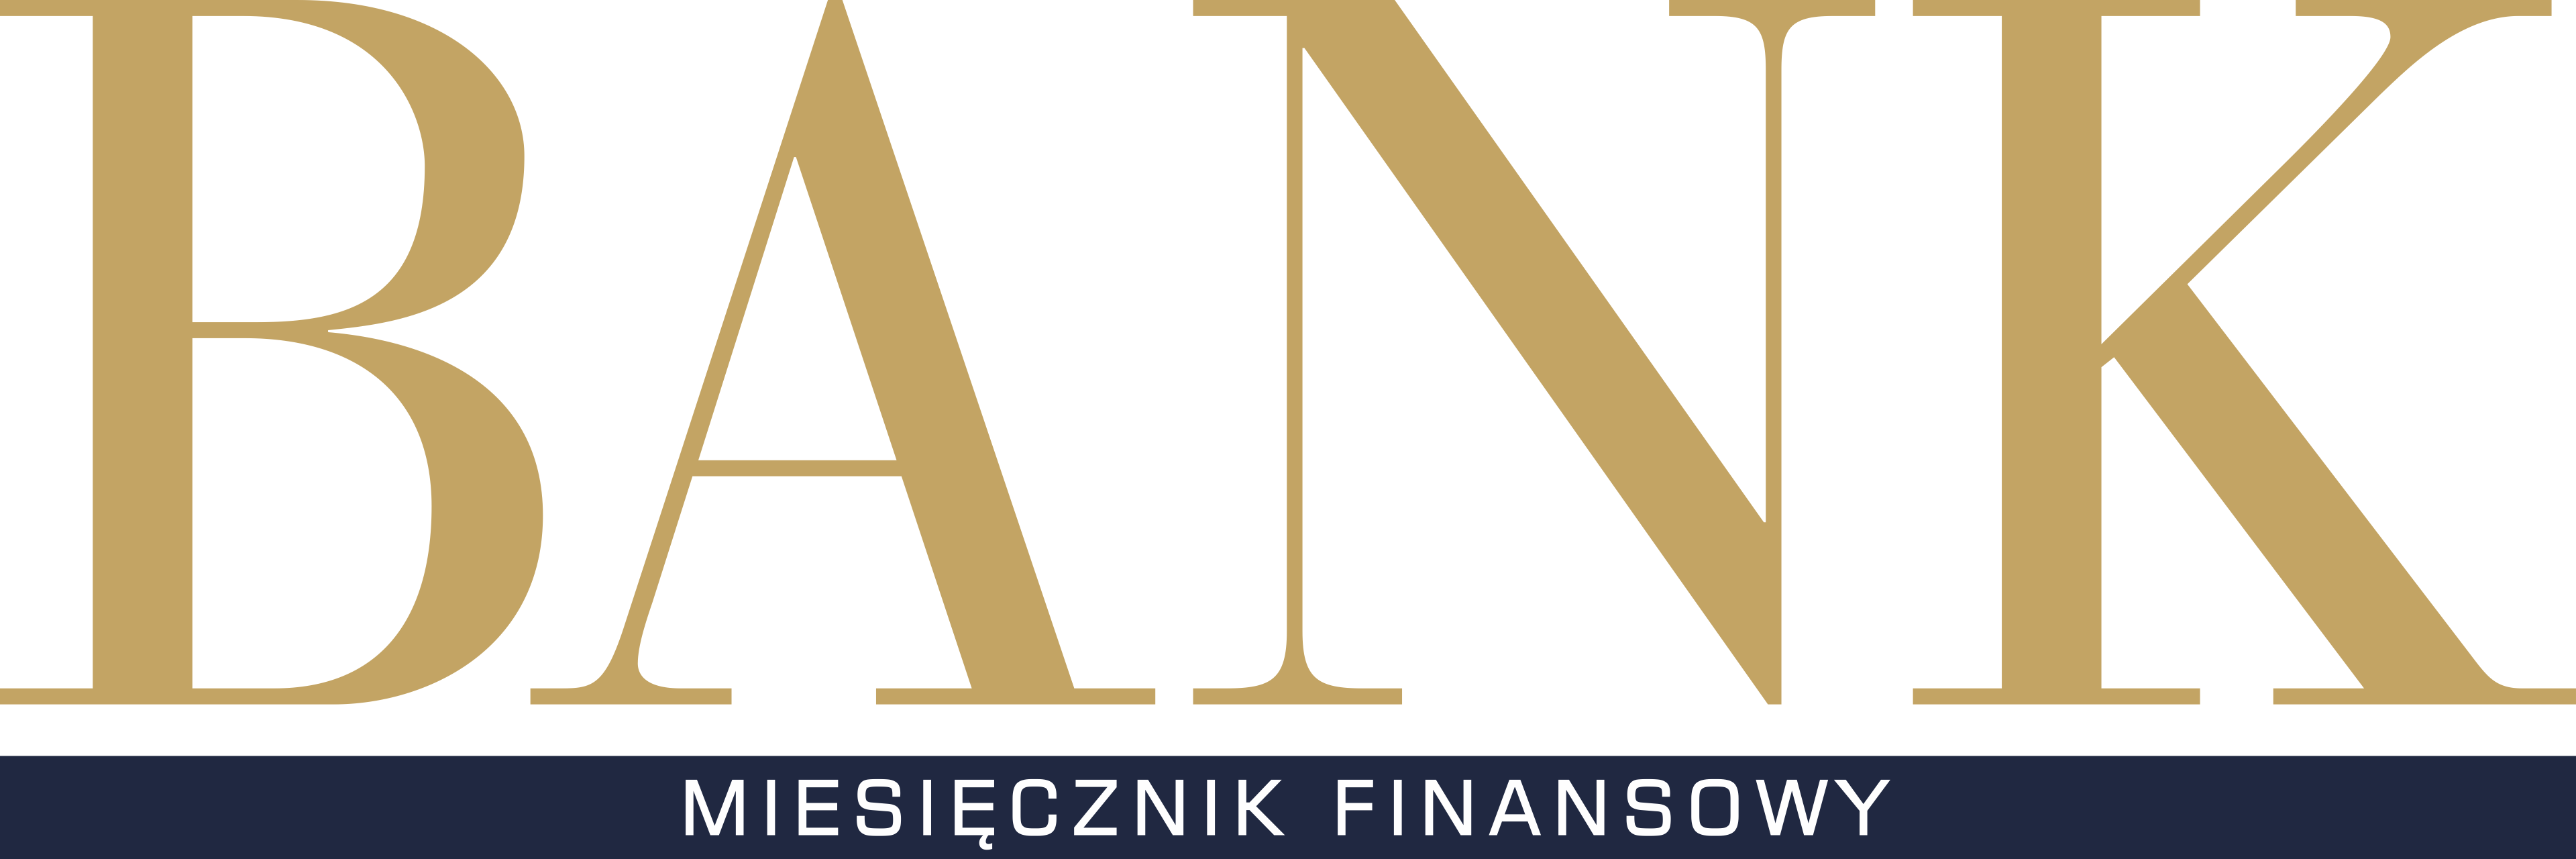 Logo - BANK - (png, RGB, 3840x1280) - 170321 GK